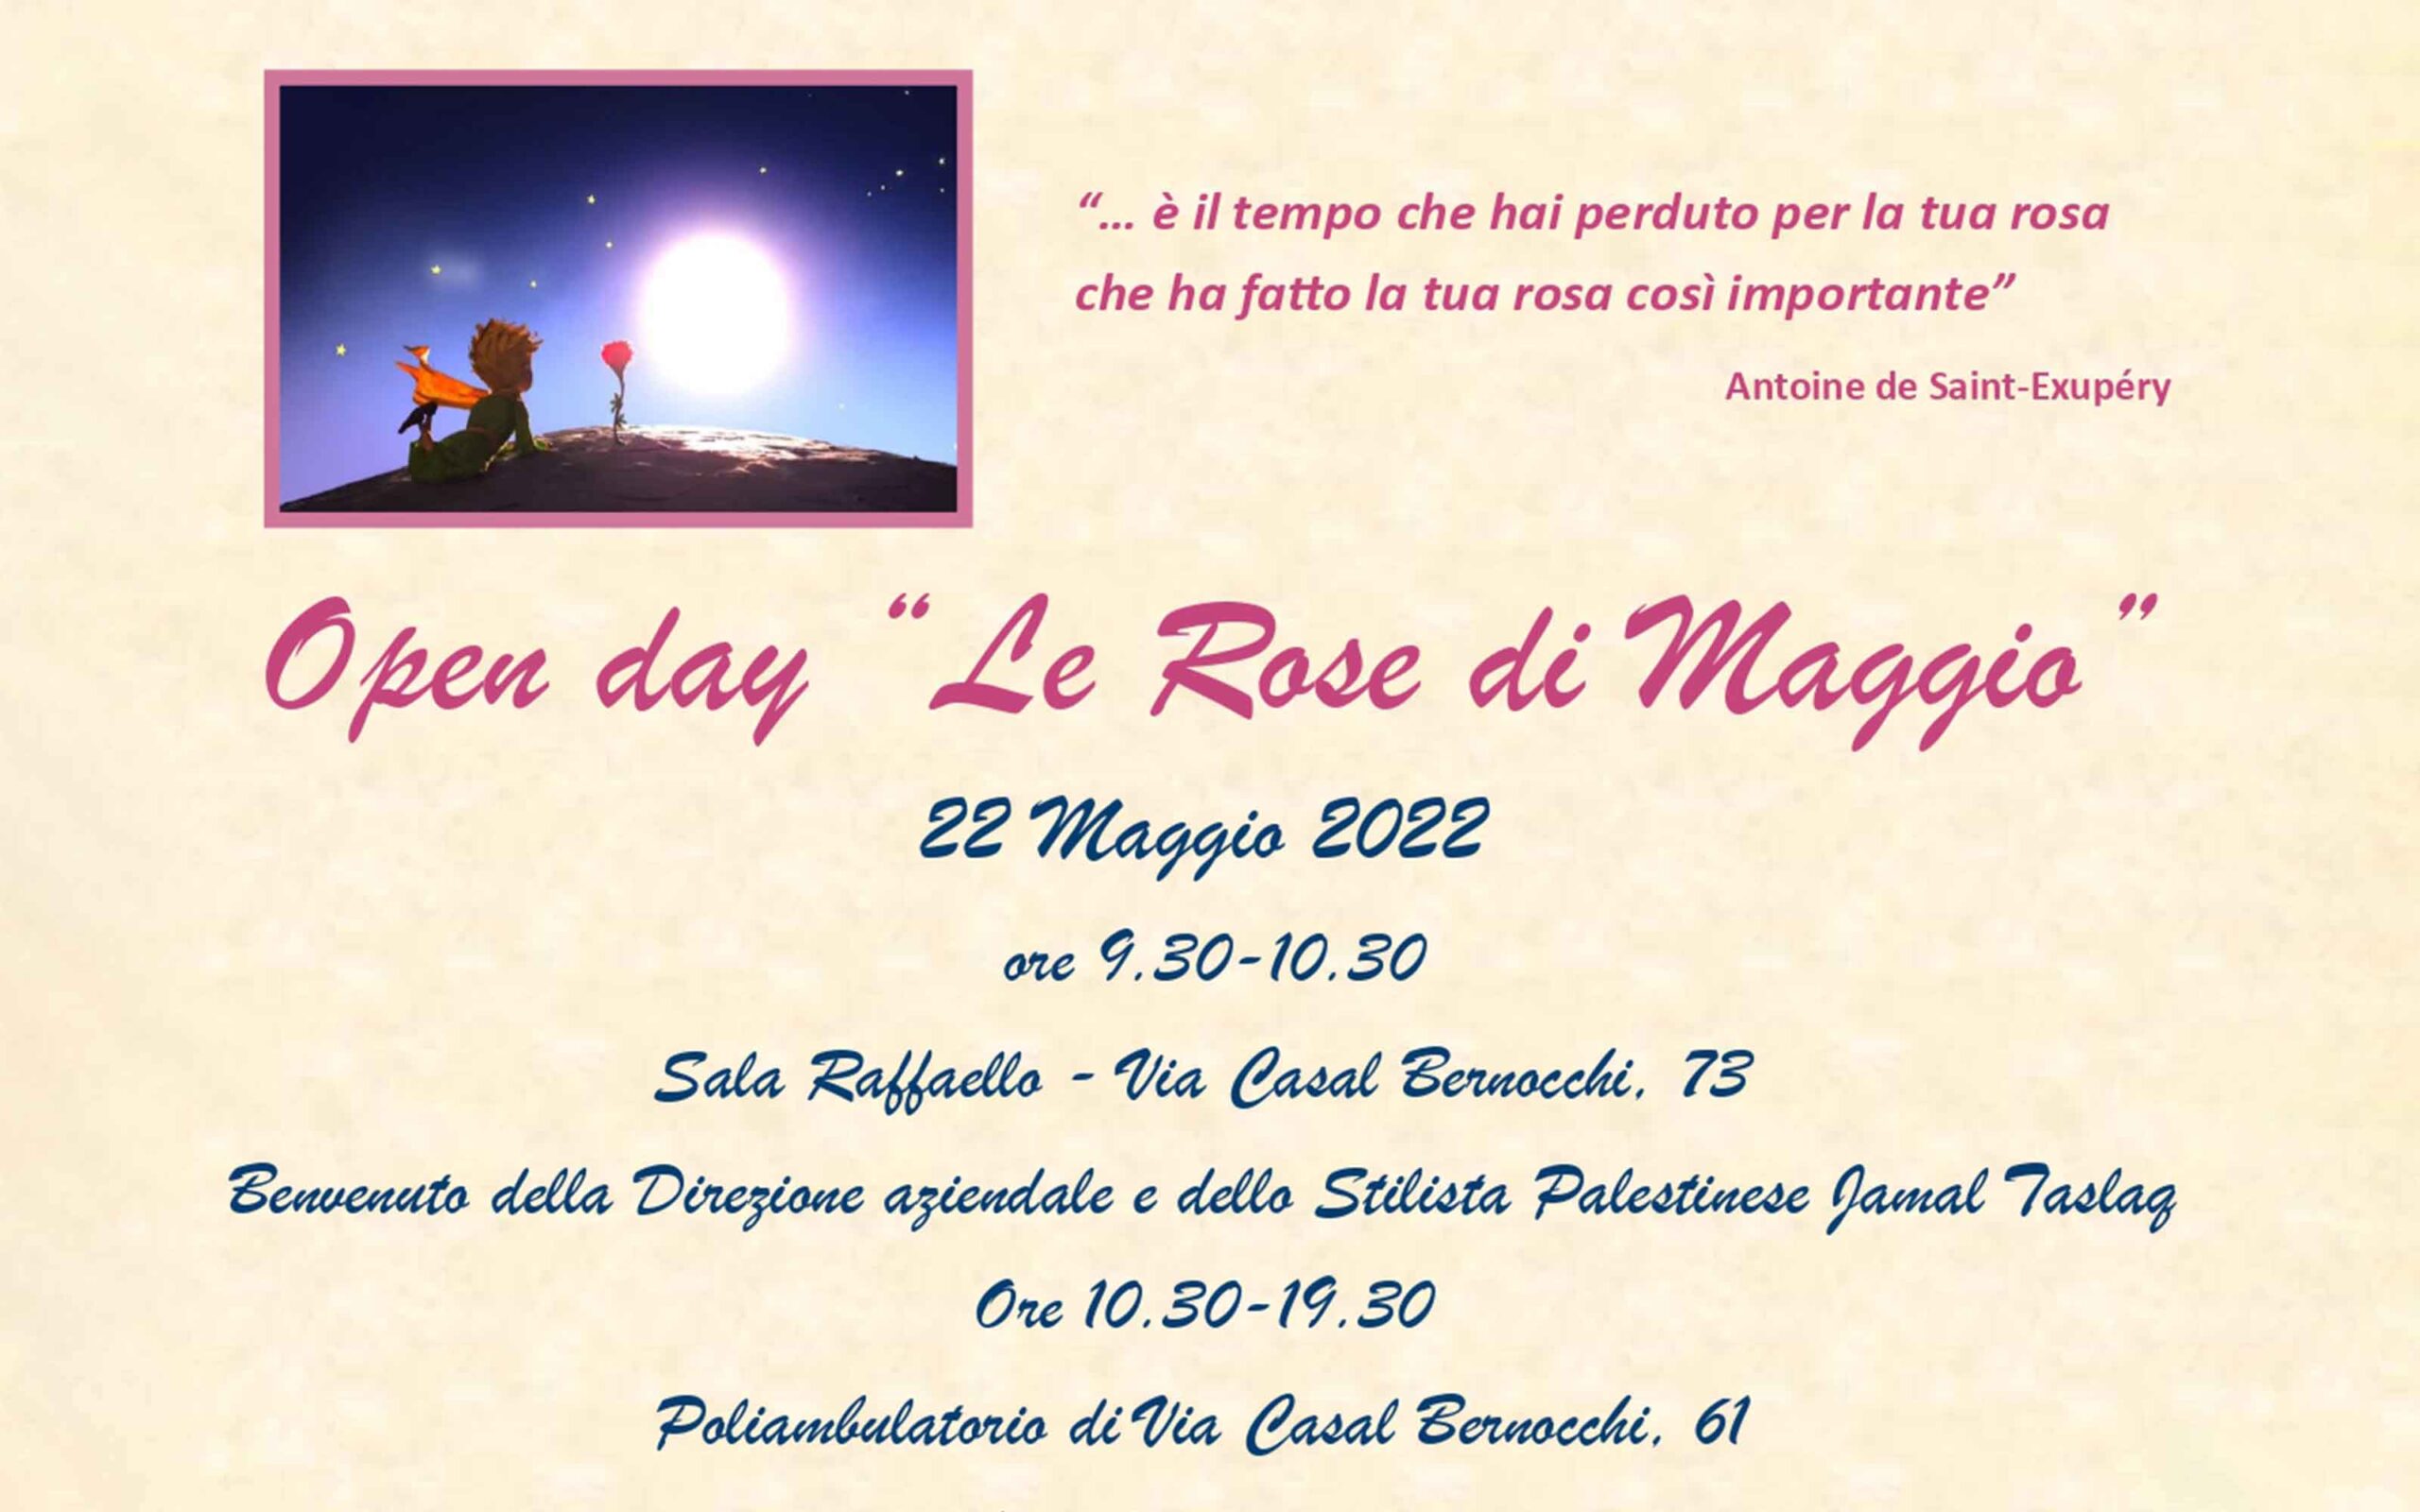 Open Day “Le Rose di Maggio”